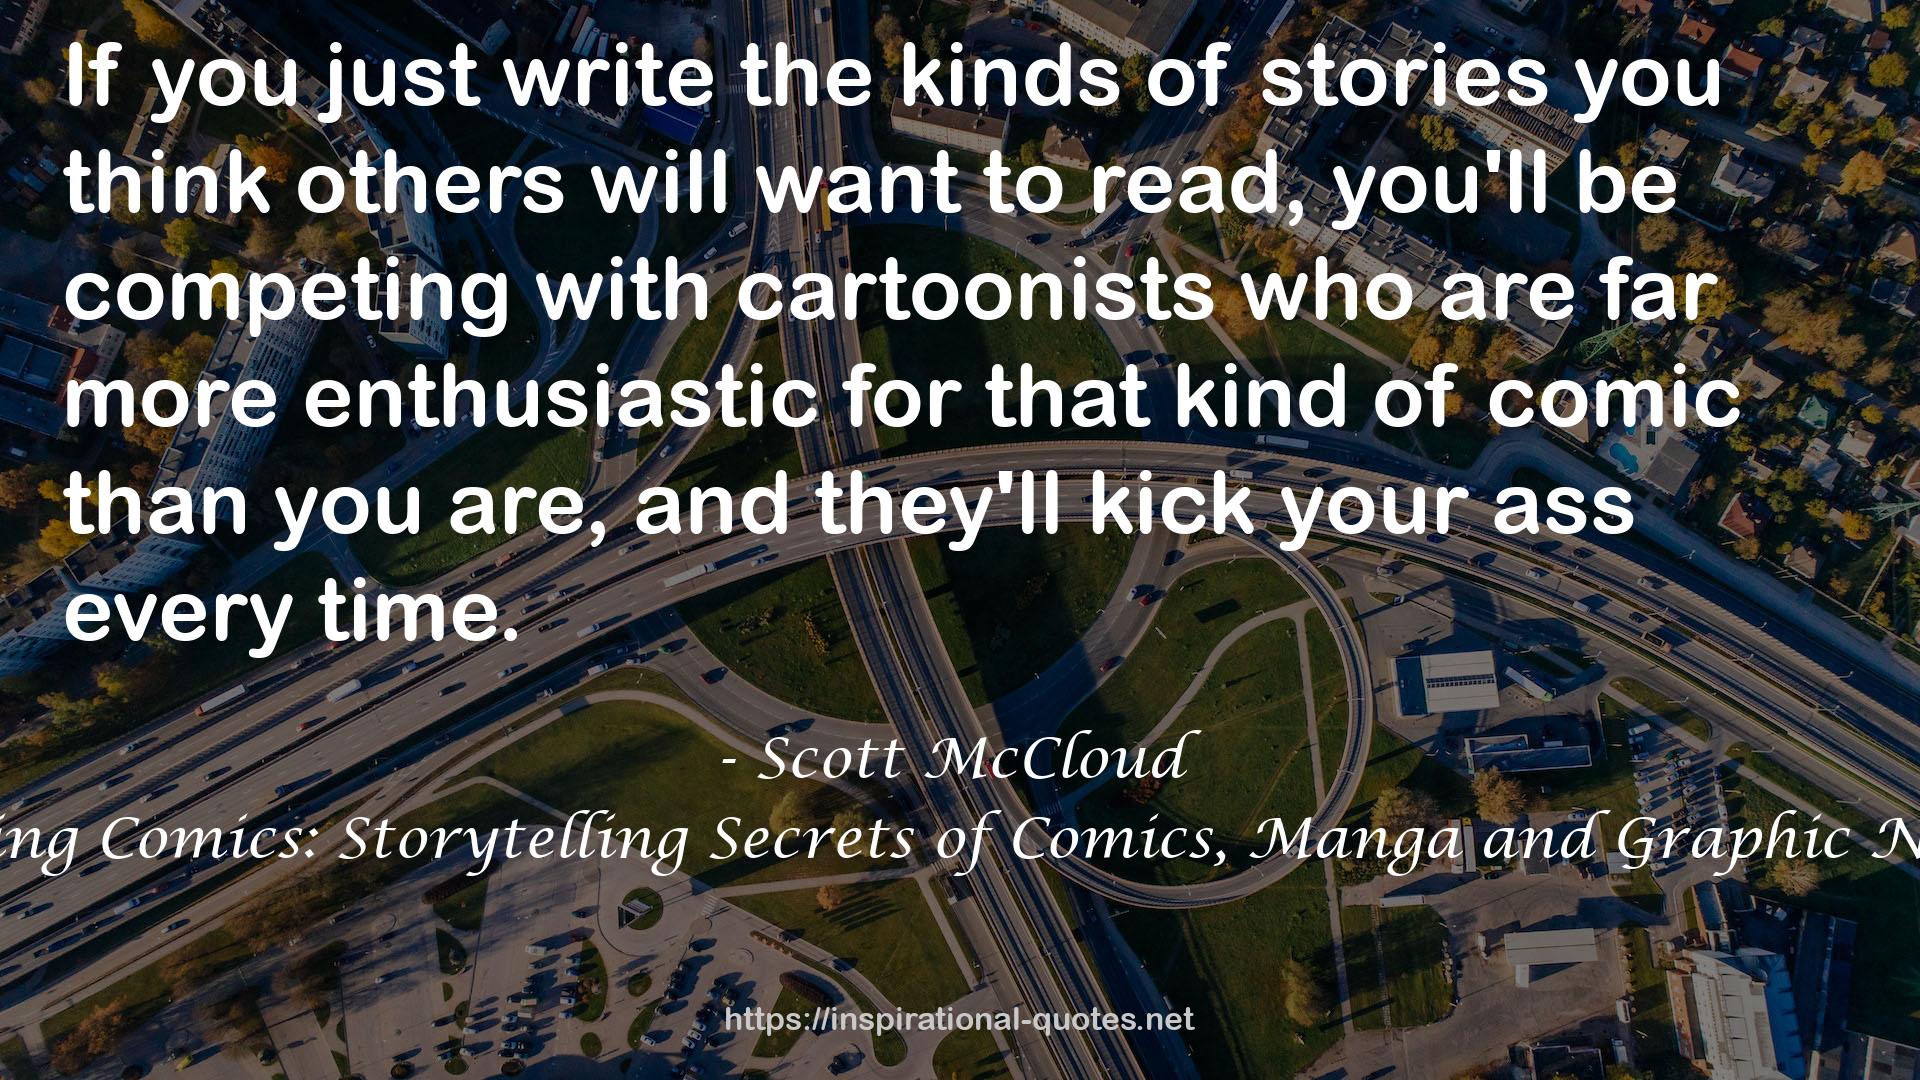 Making Comics: Storytelling Secrets of Comics, Manga and Graphic Novels QUOTES